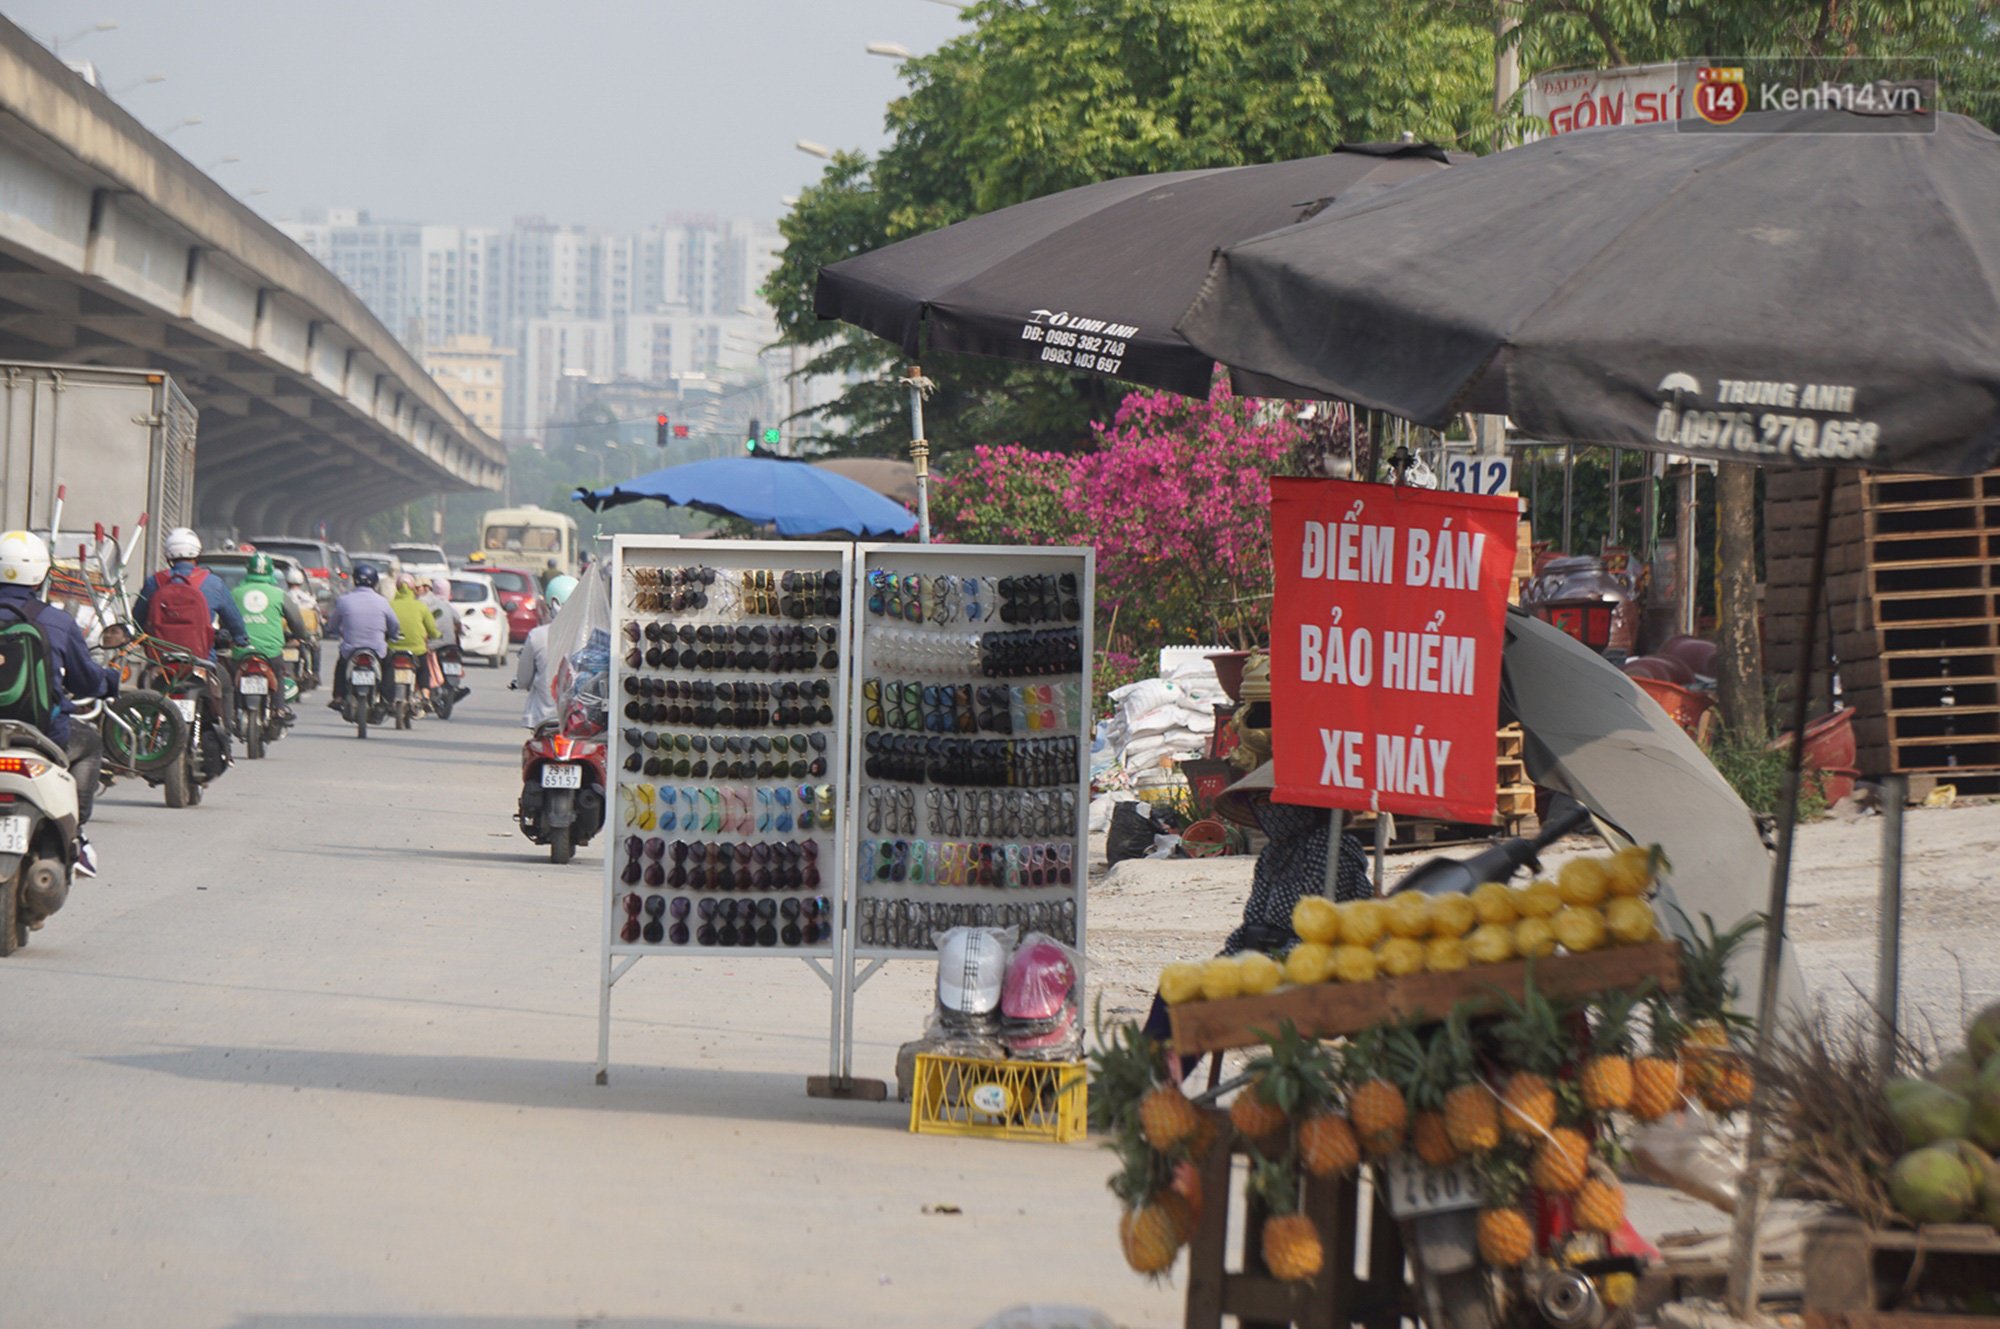 Hà Nội: Người dân đổ xô đi mua bảo hiểm xe máy, nơi bán giá siêu rẻ 20.000đ/ năm mọc lên nhan nhản ở lề đường - Ảnh 3.